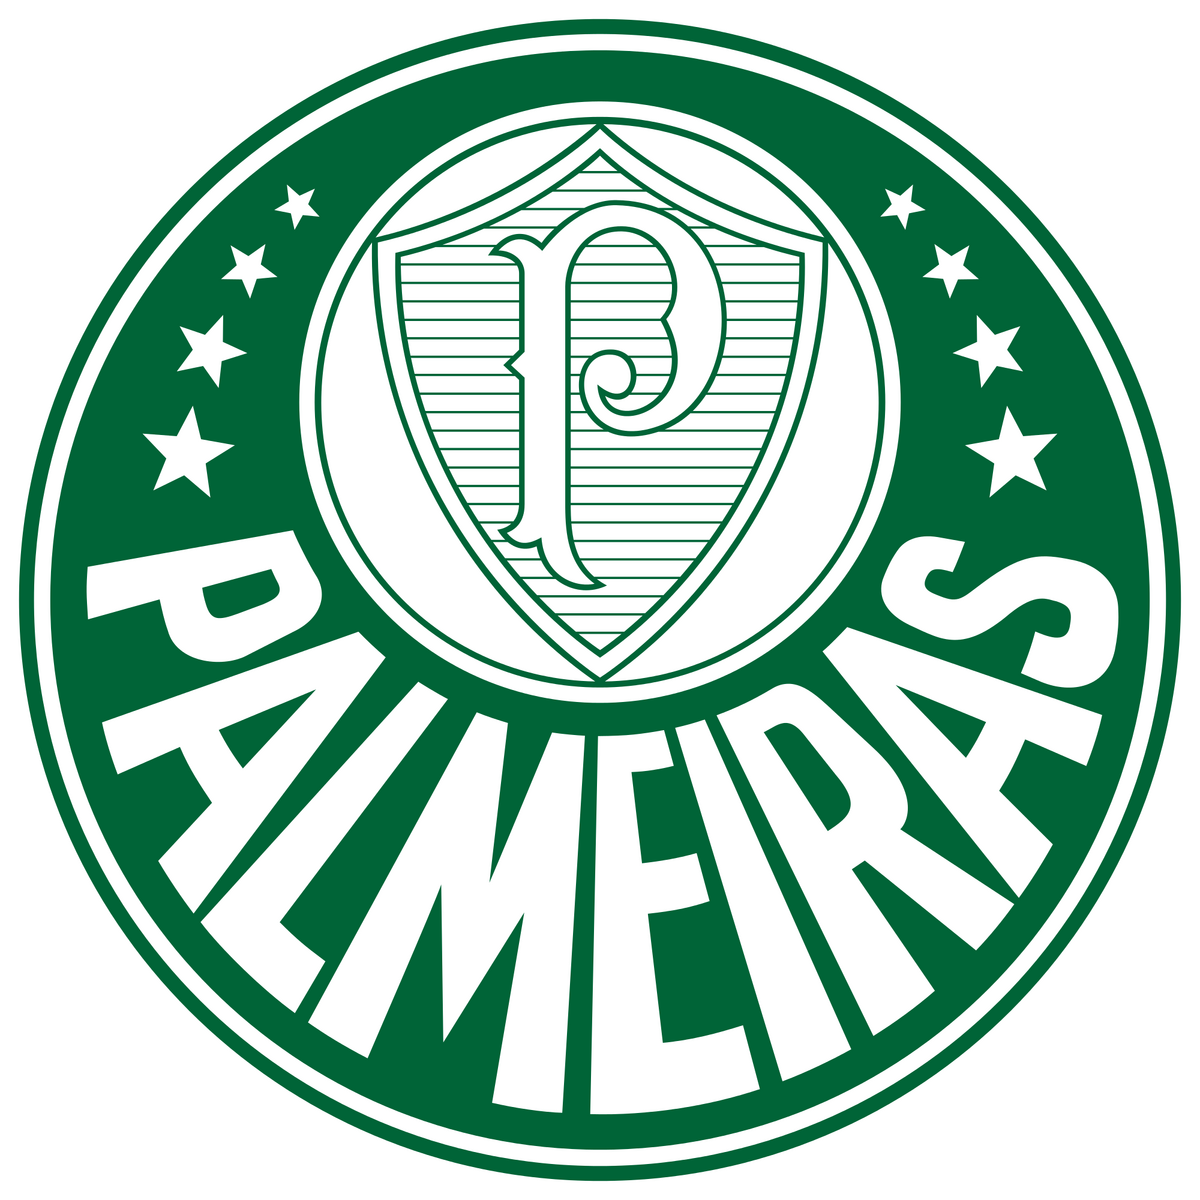 Palmeiras tenta virada heroica contra o São Paulo na final do Paulista